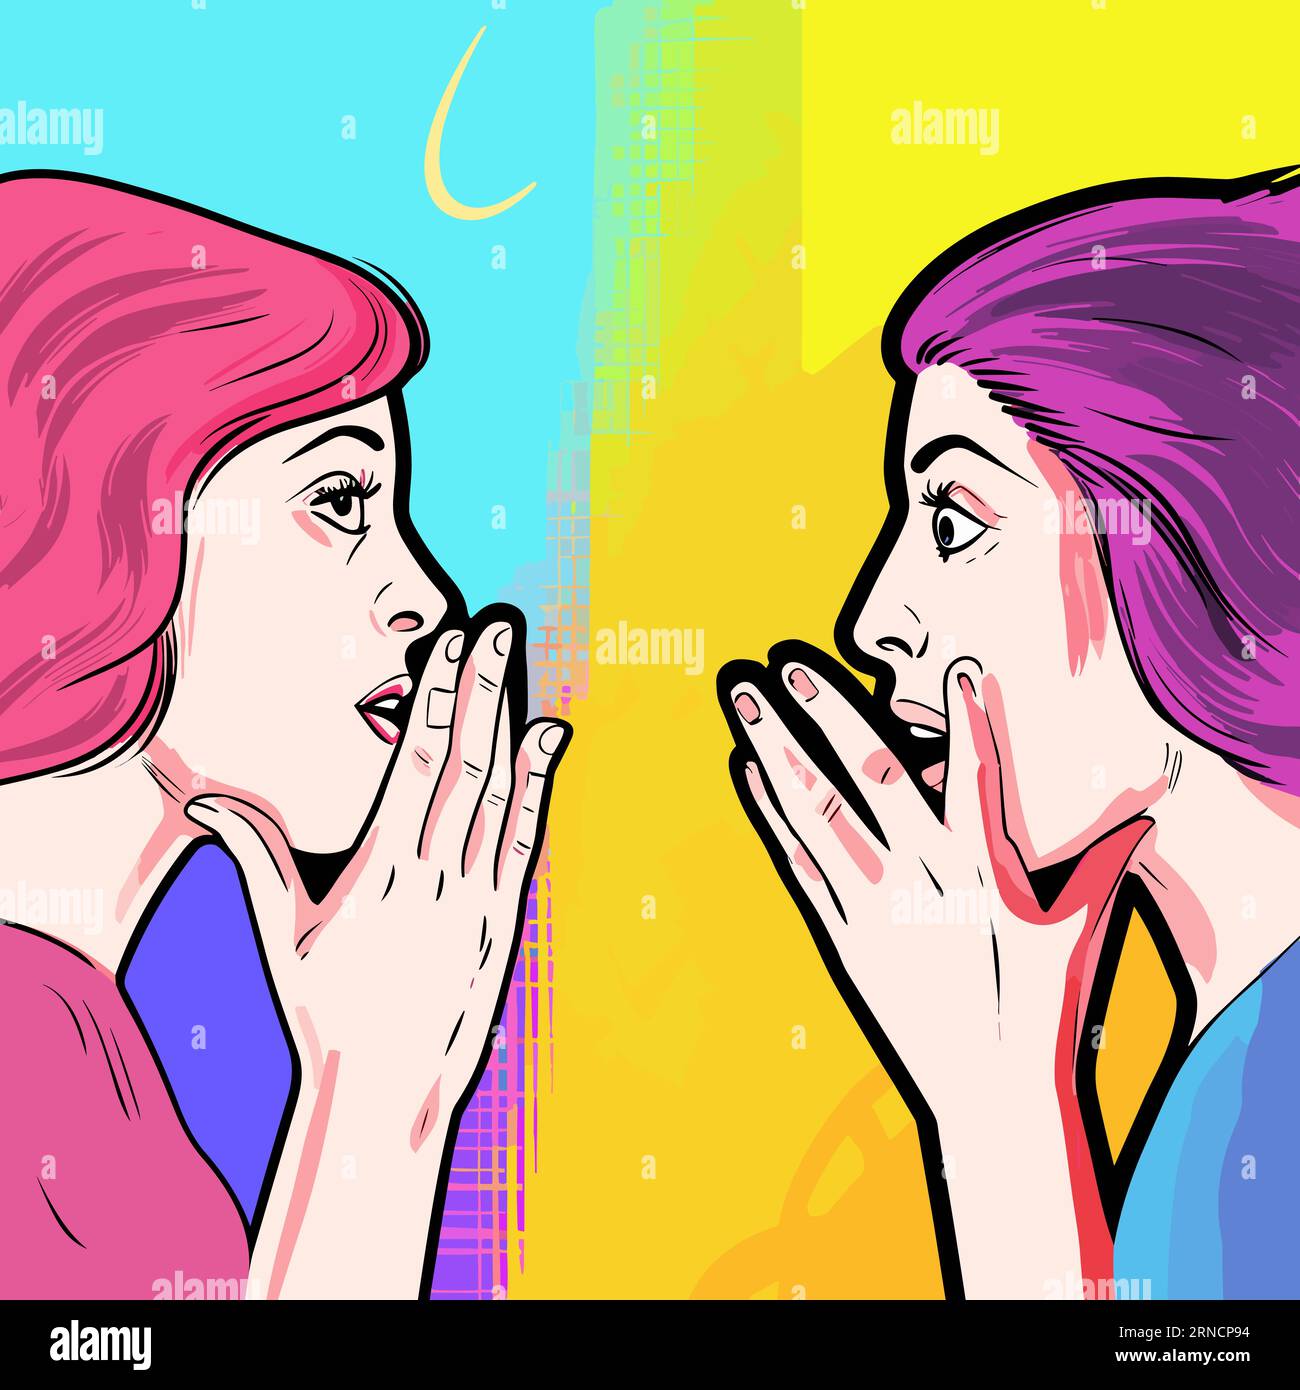 Zwei Frauen Sprechen Miteinander, Während Sie Handgesten Verwenden, Im Stil Albtraumhafter Illustrationen, Farbenfroher Träume, Unverwechselbarer Nasen Und Dunkler Nadel Stock Vektor